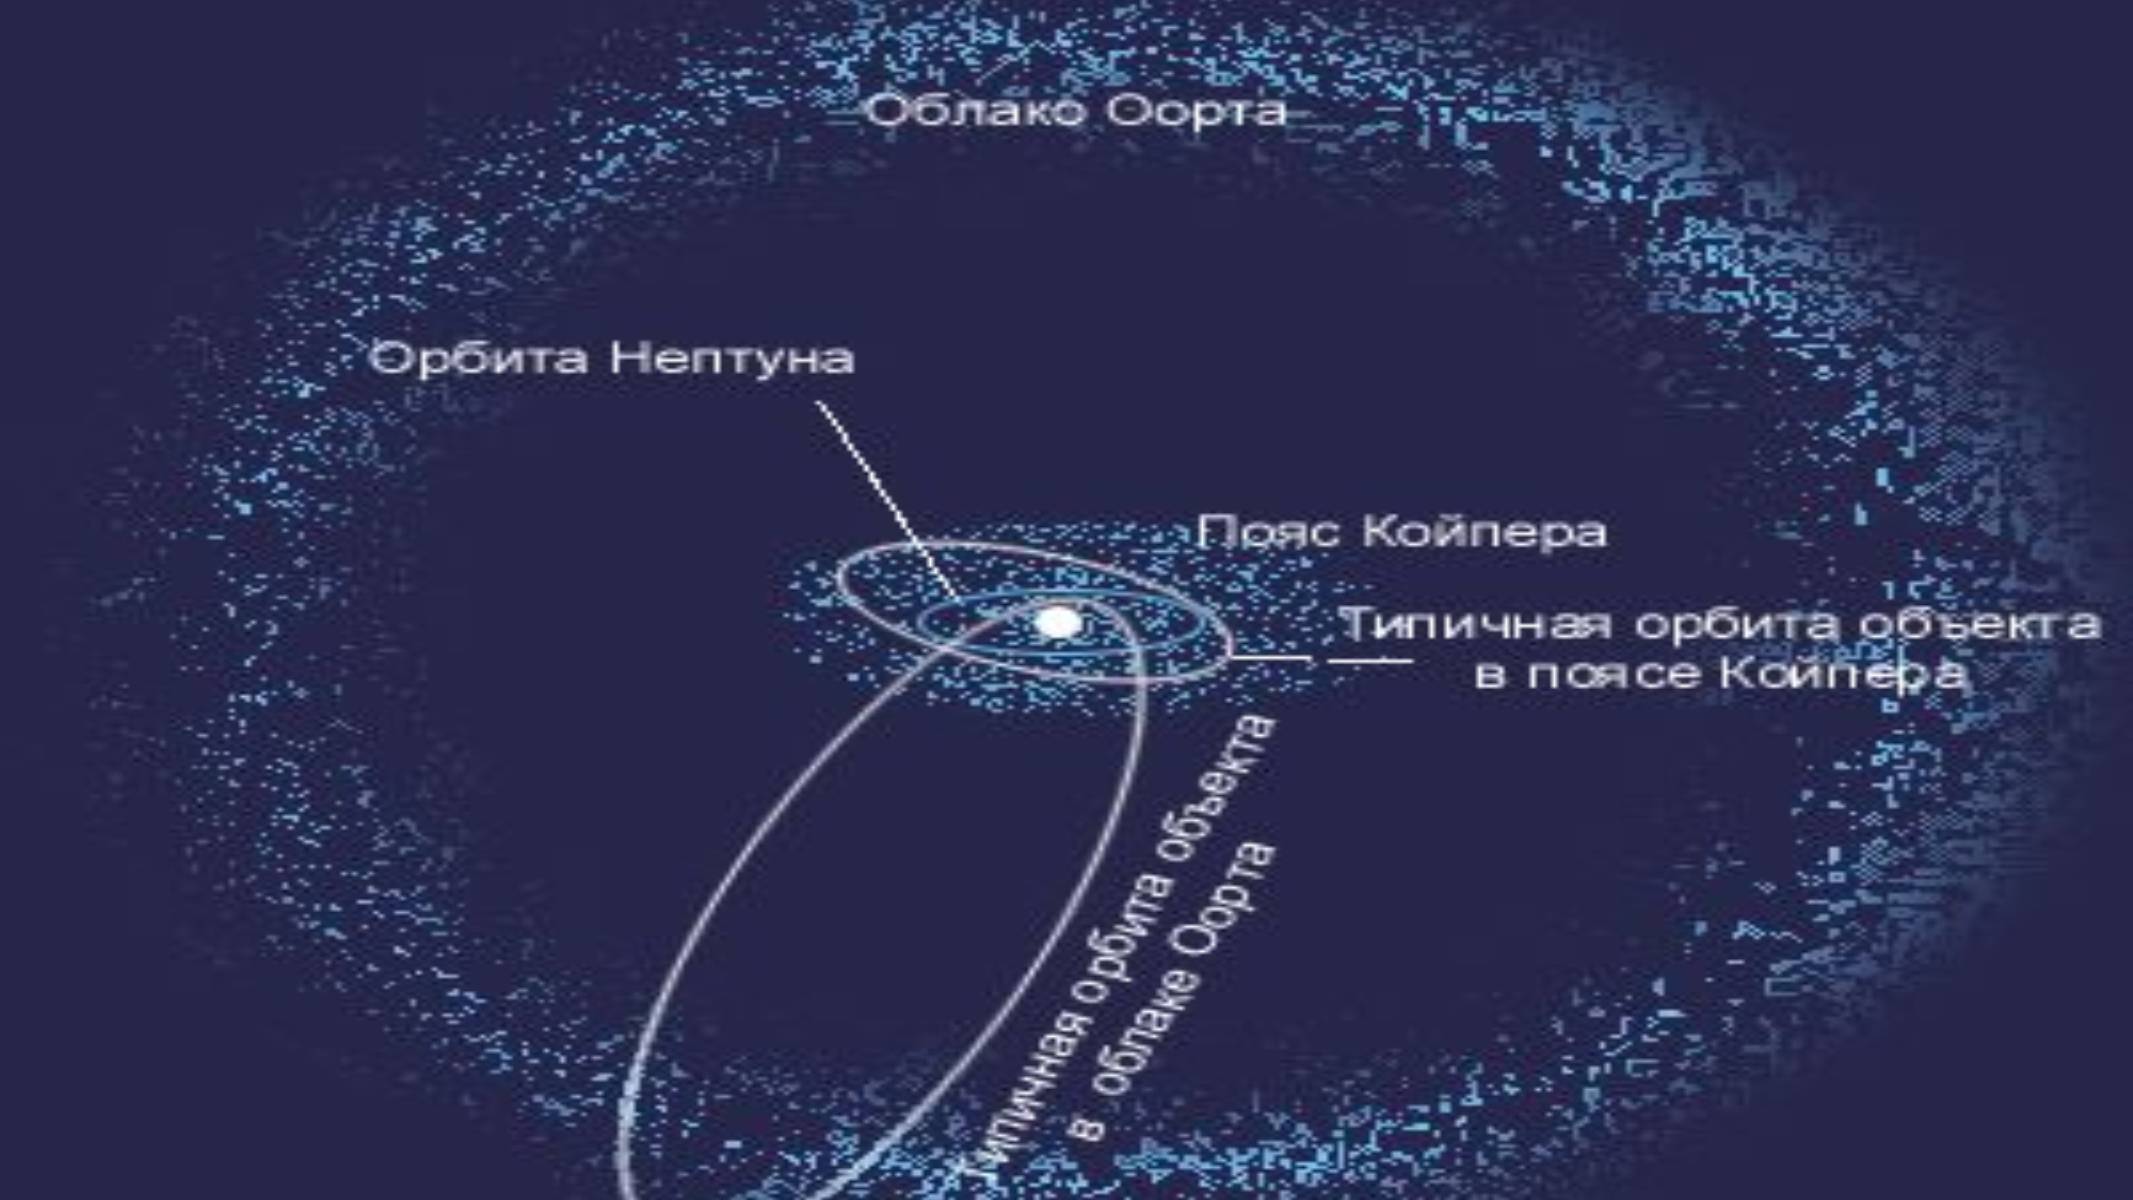 Нептун влияние. Пояс Койпера и облако Оорта в солнечной системе. Солнечная система пояс Койпера Оорта. Пояс Хиллса пояс Койпера облако Оорта. Облако Оорта пояс Койпера главный пояс астероидов.